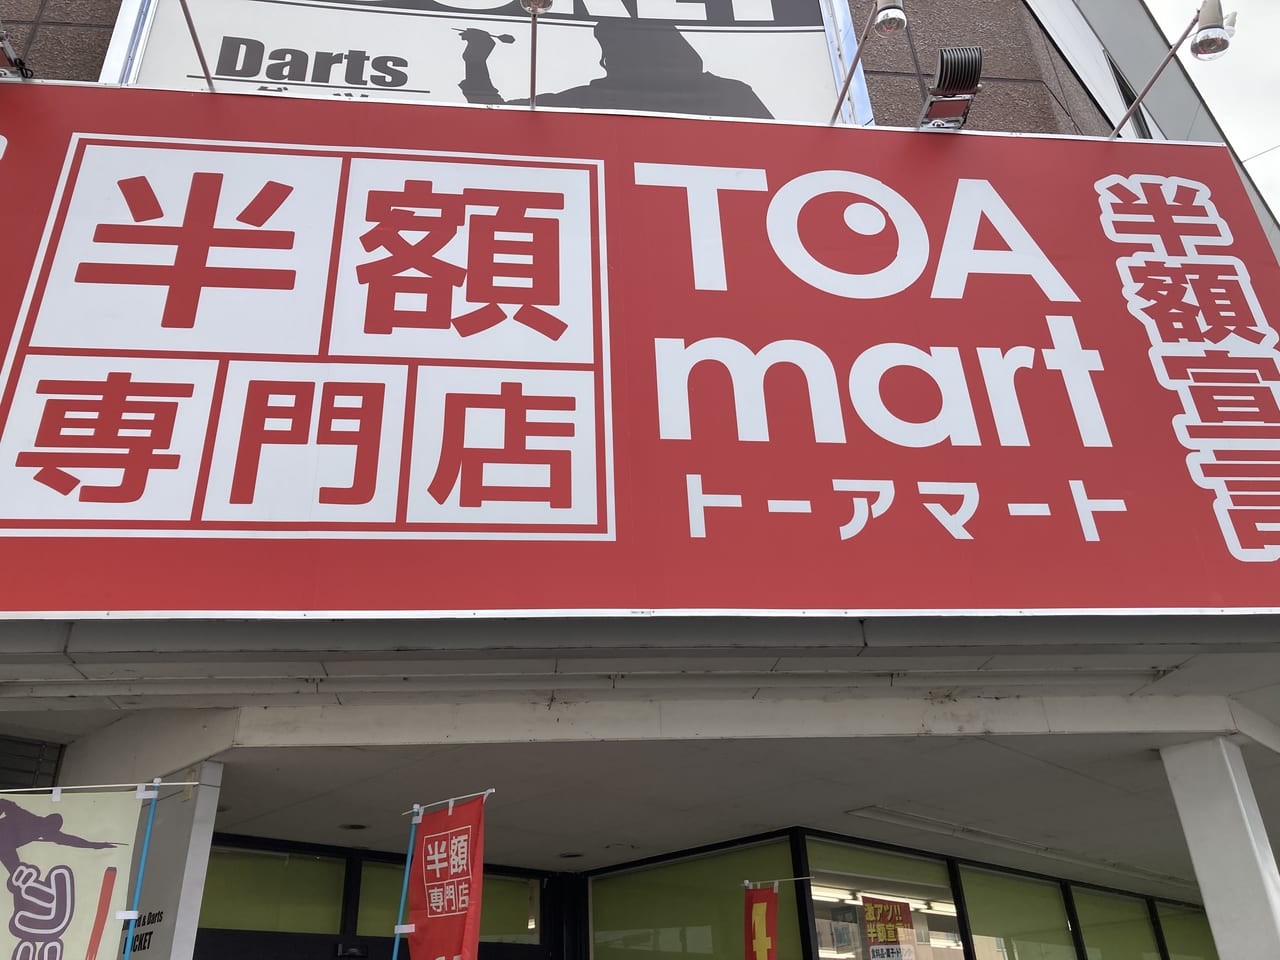 トーアマート松山東石井店